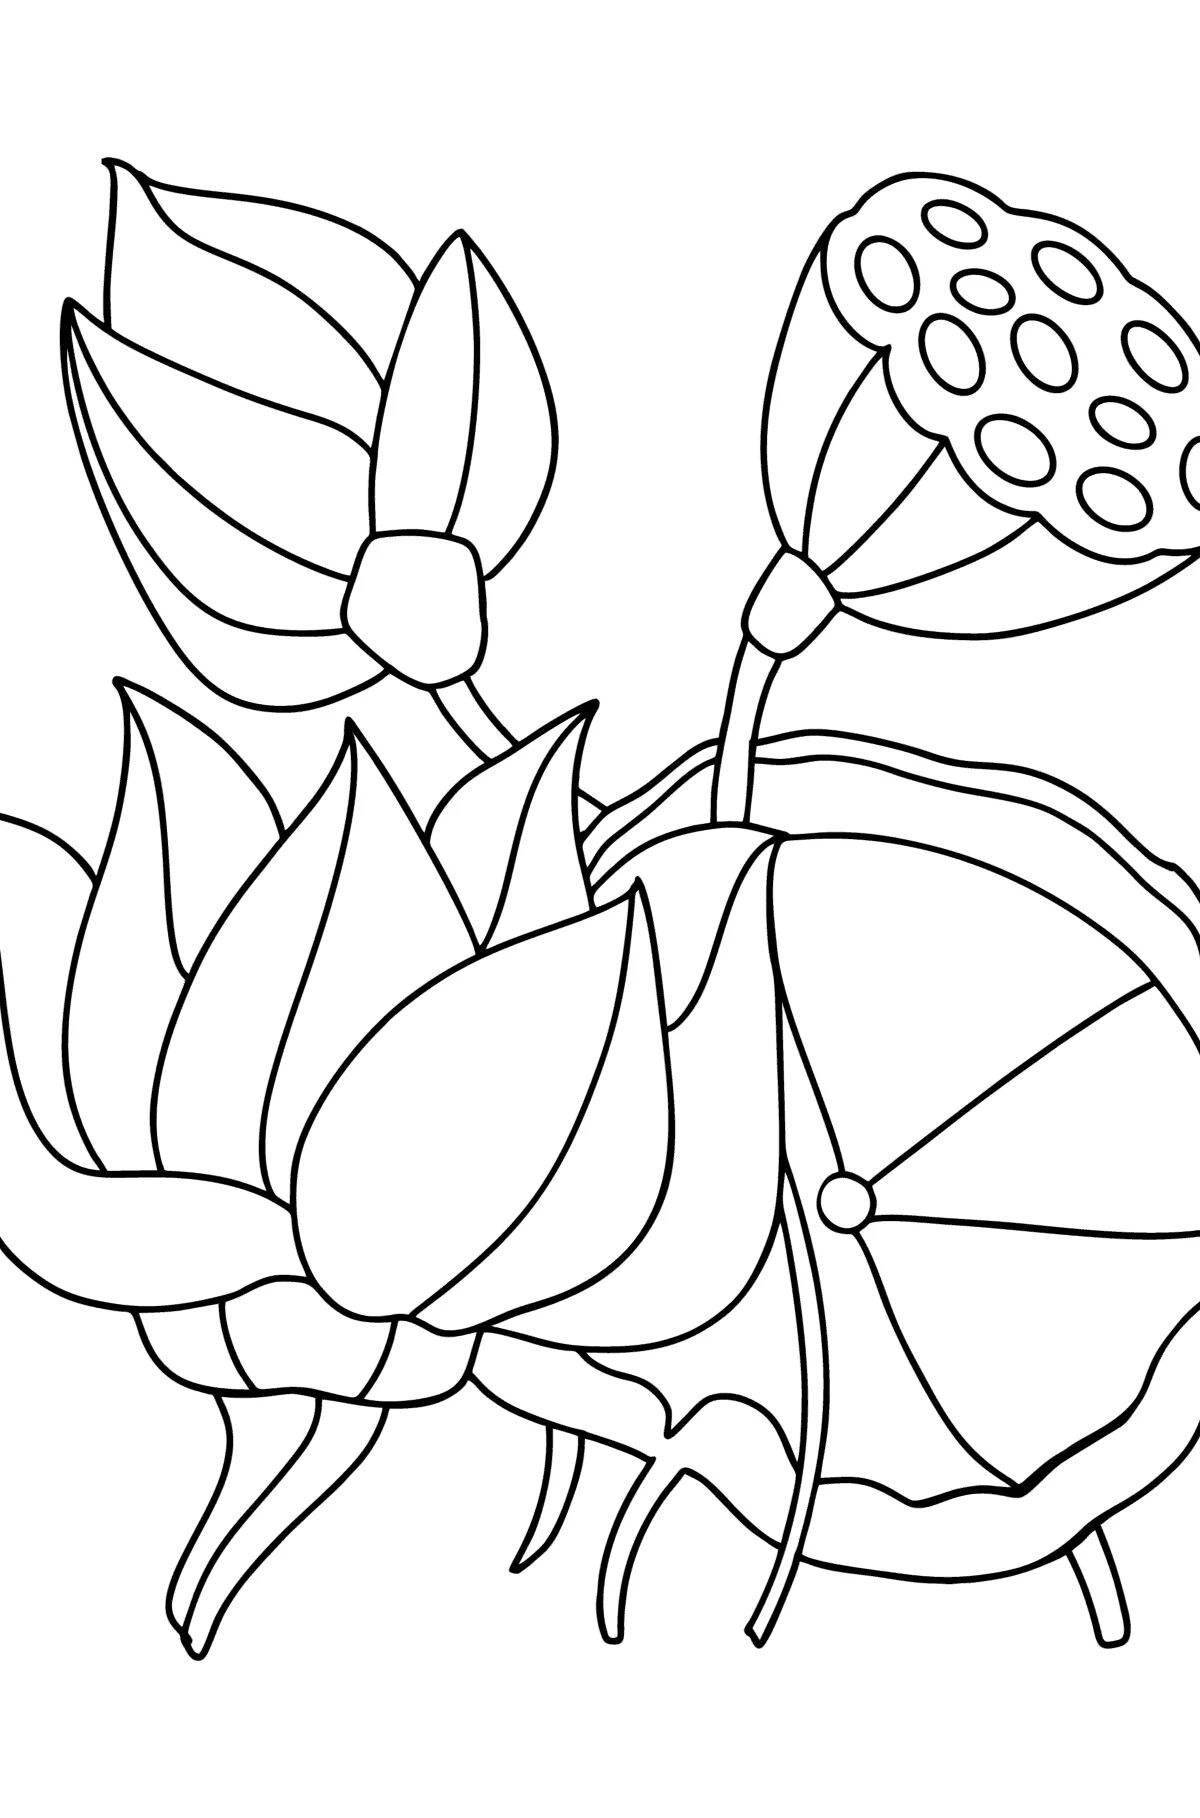 Joyful lotus coloring book for kids